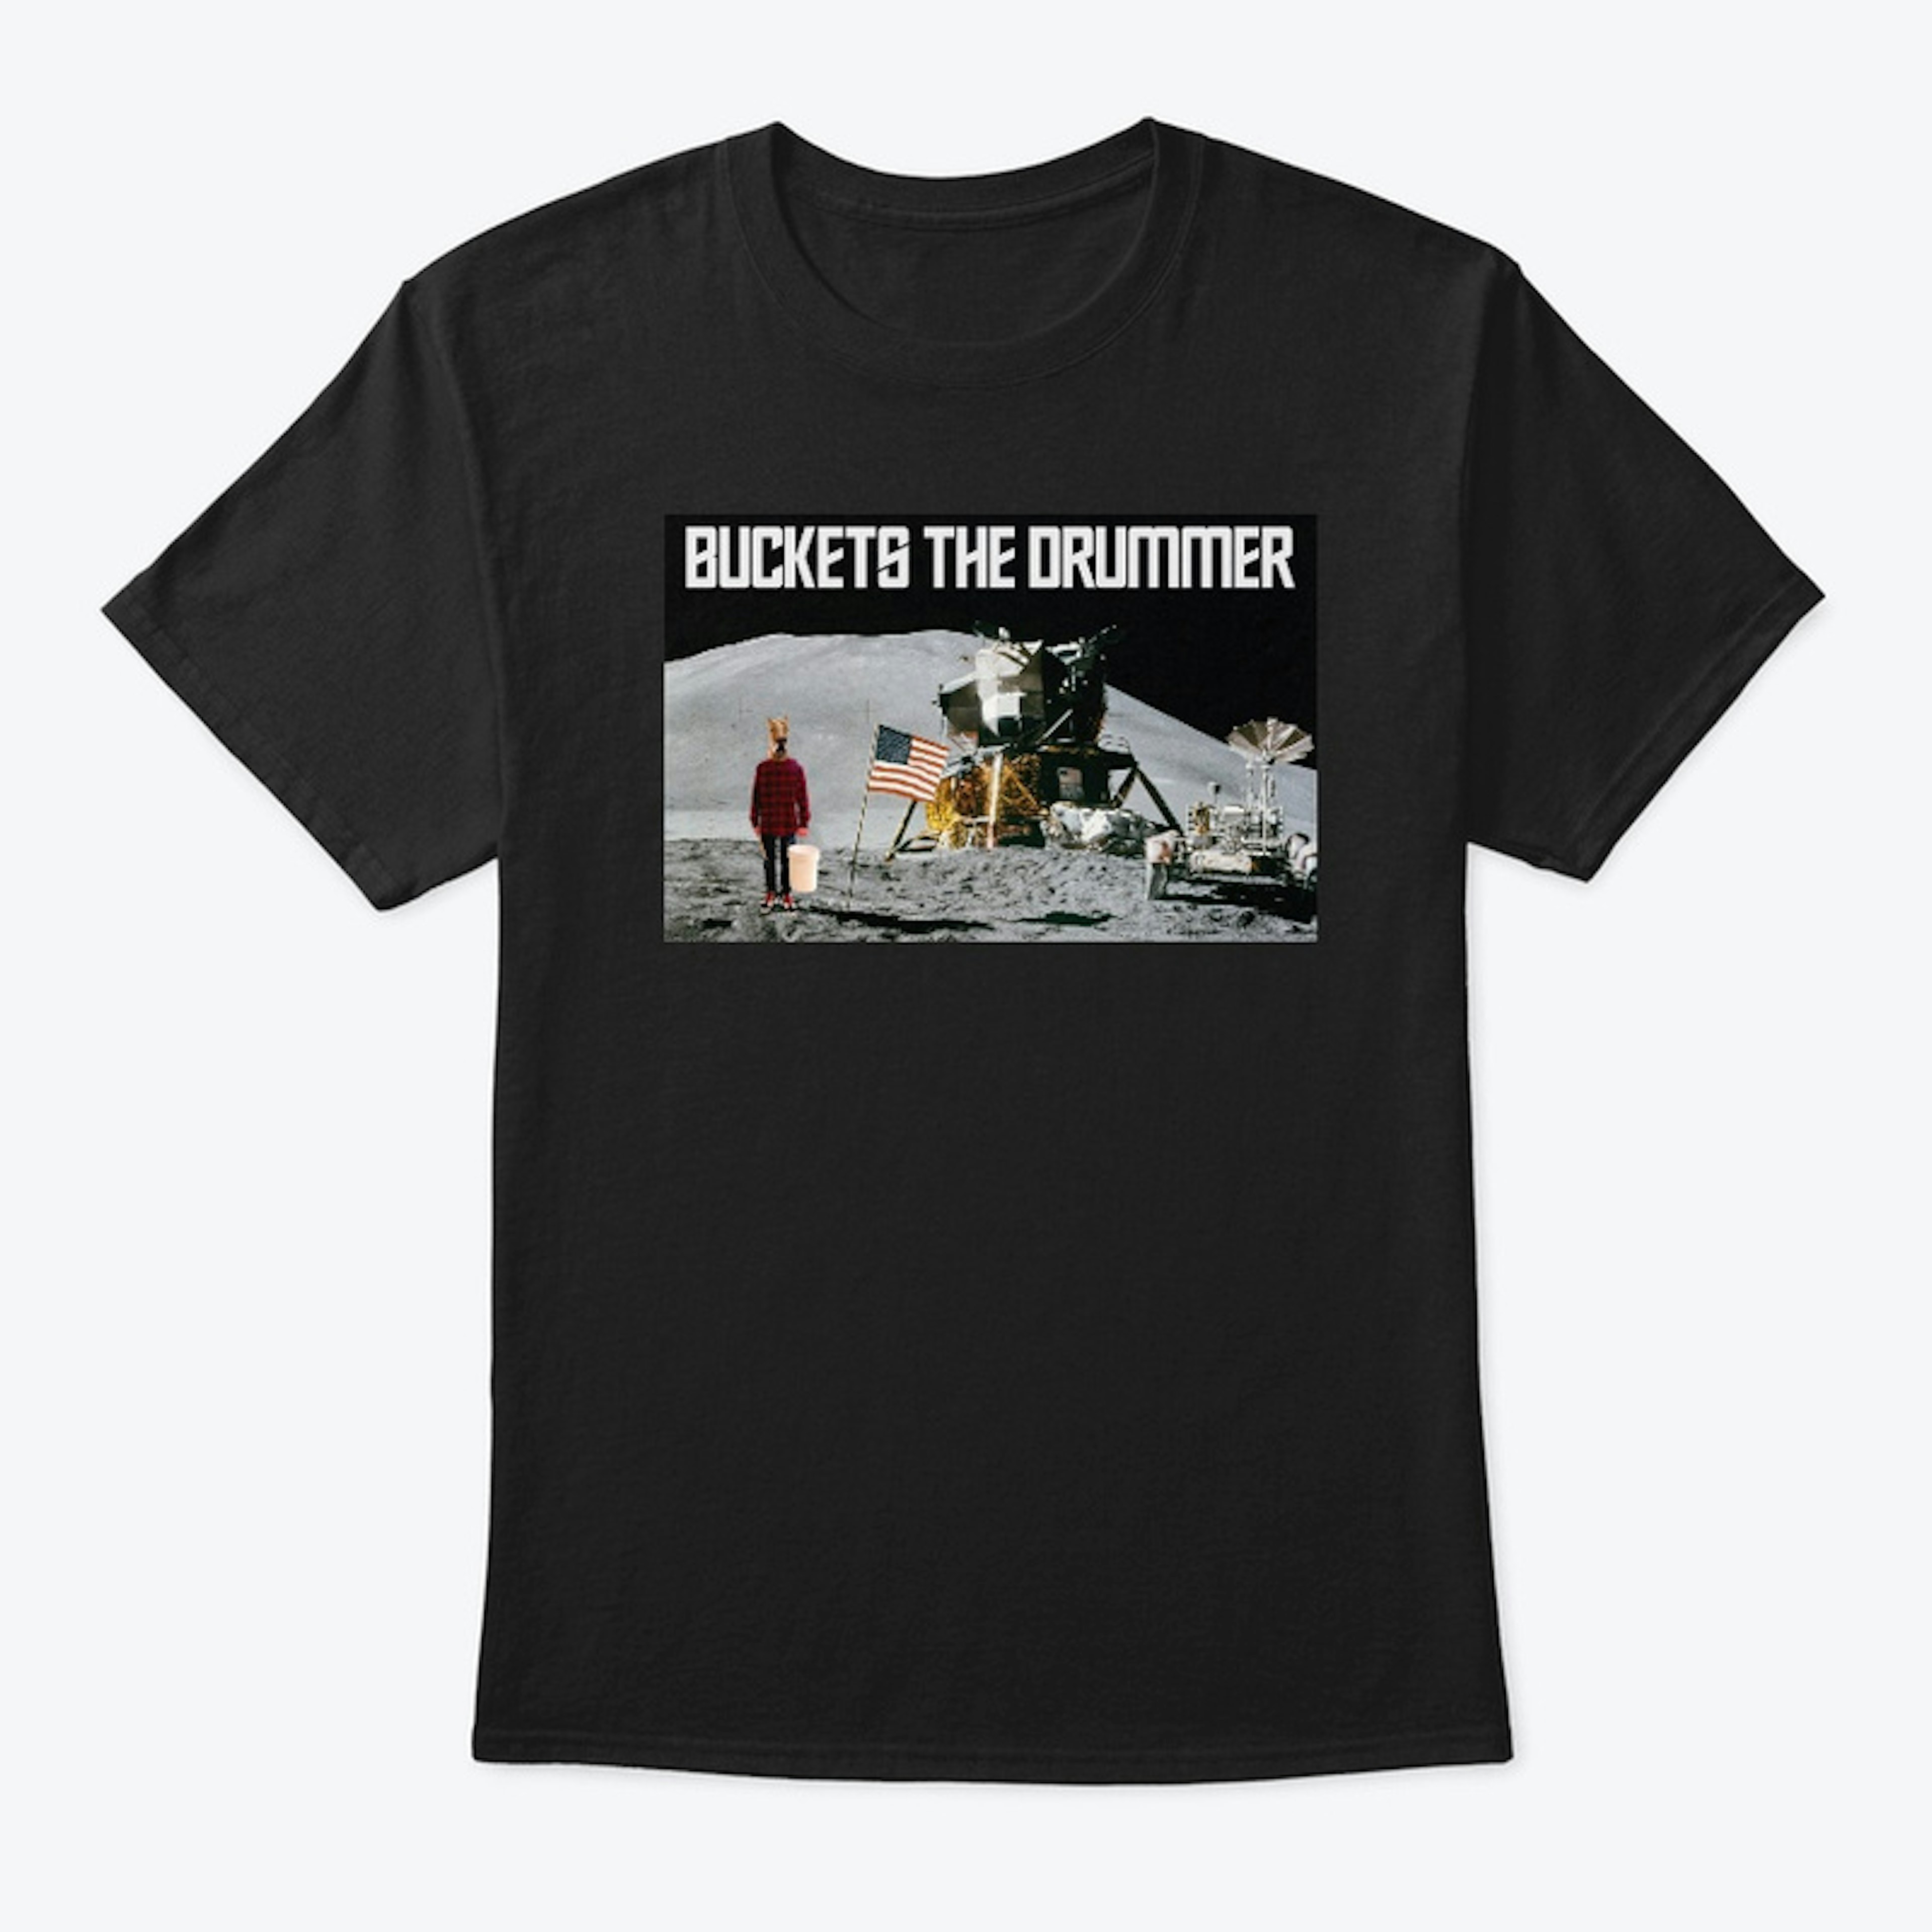 Buckets the Astronaut T-Shirt